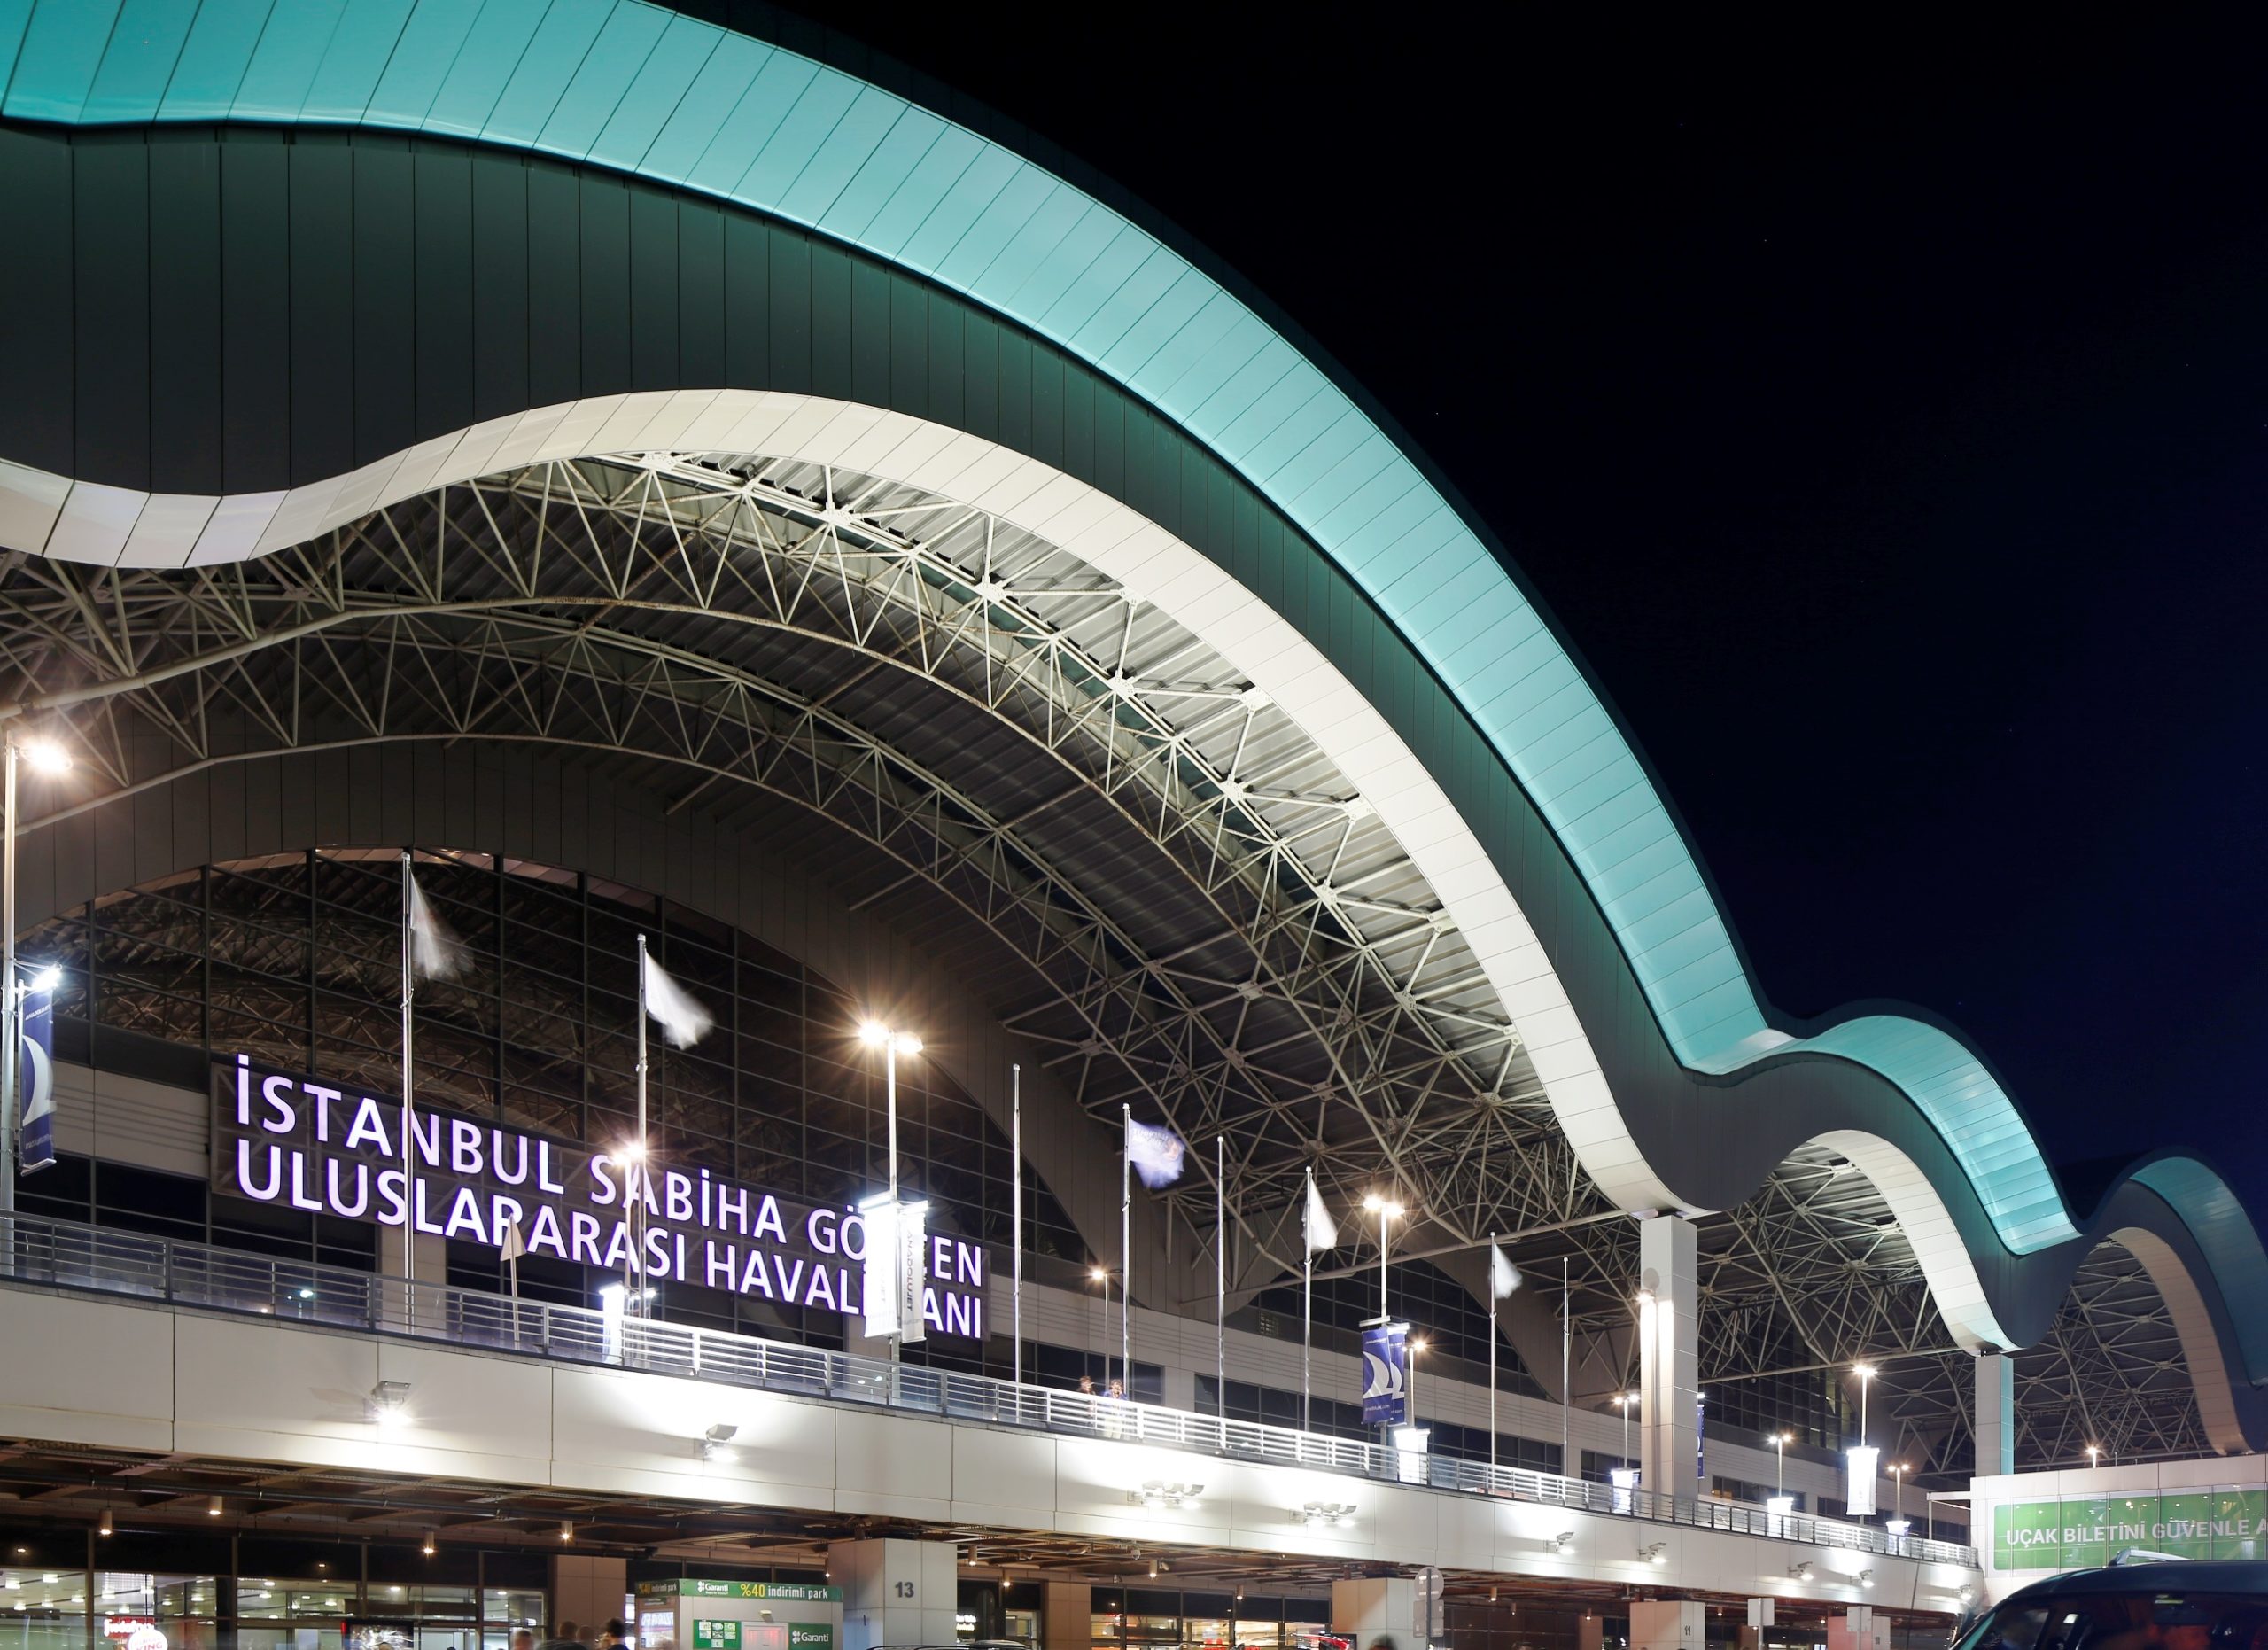 İstanbul Sabiha Gökçen Havalimanı, Kriz Öncesi Yolcu Sayısına Giderek Yaklaşıyor